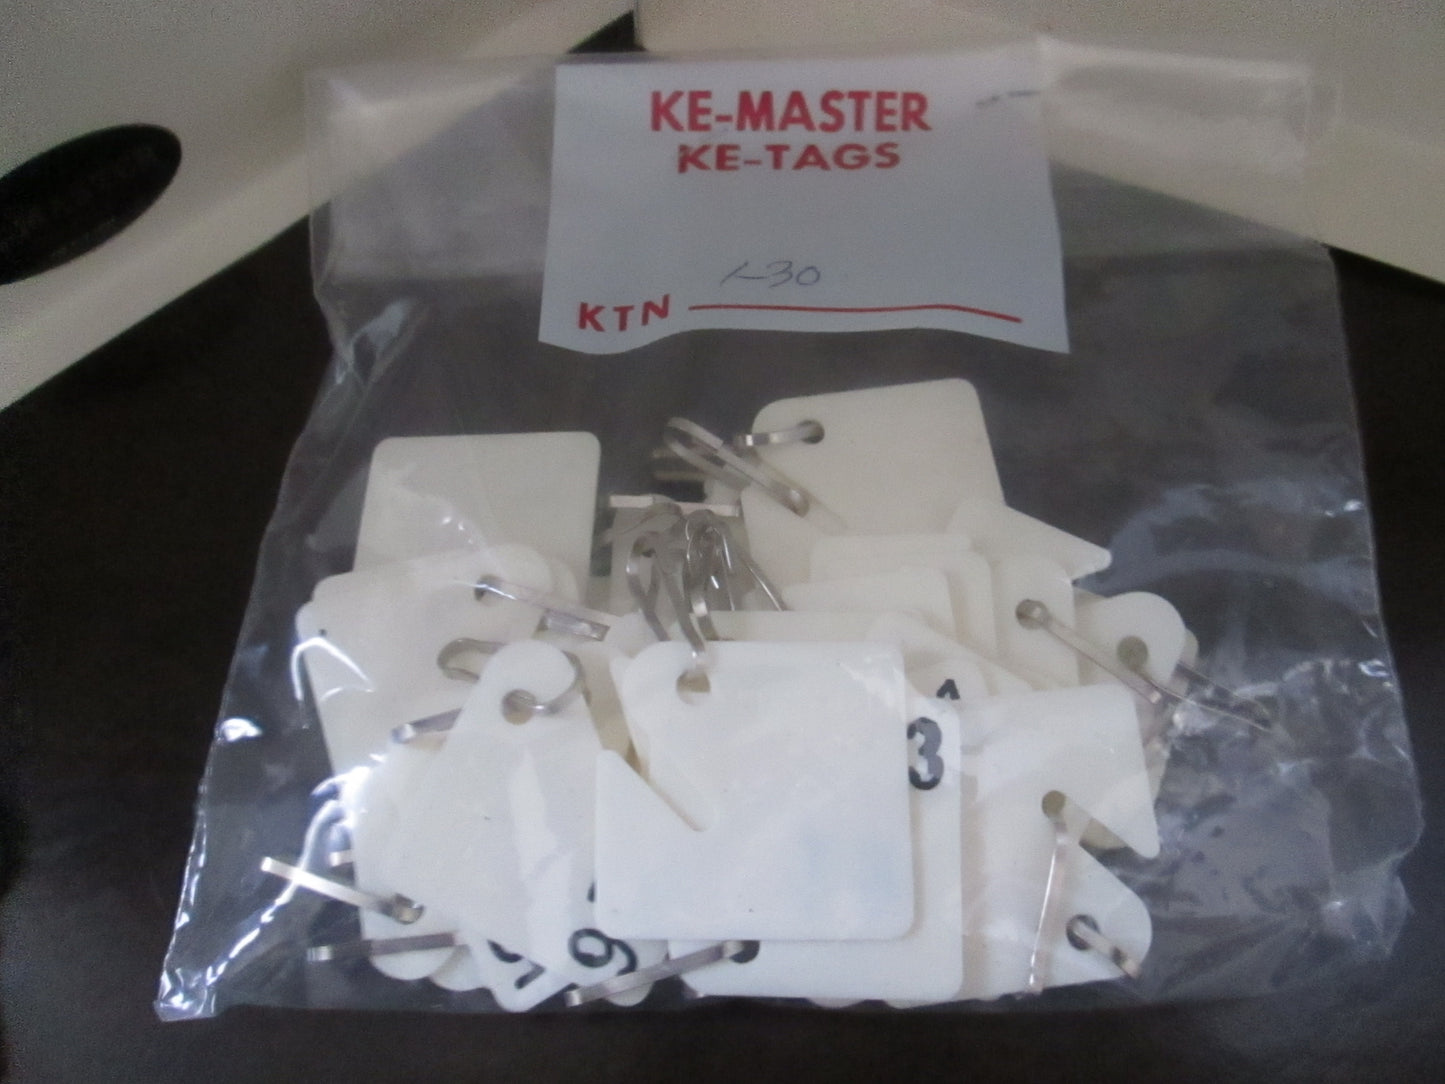 Keymaster KMASTR 30 Key Cabinet